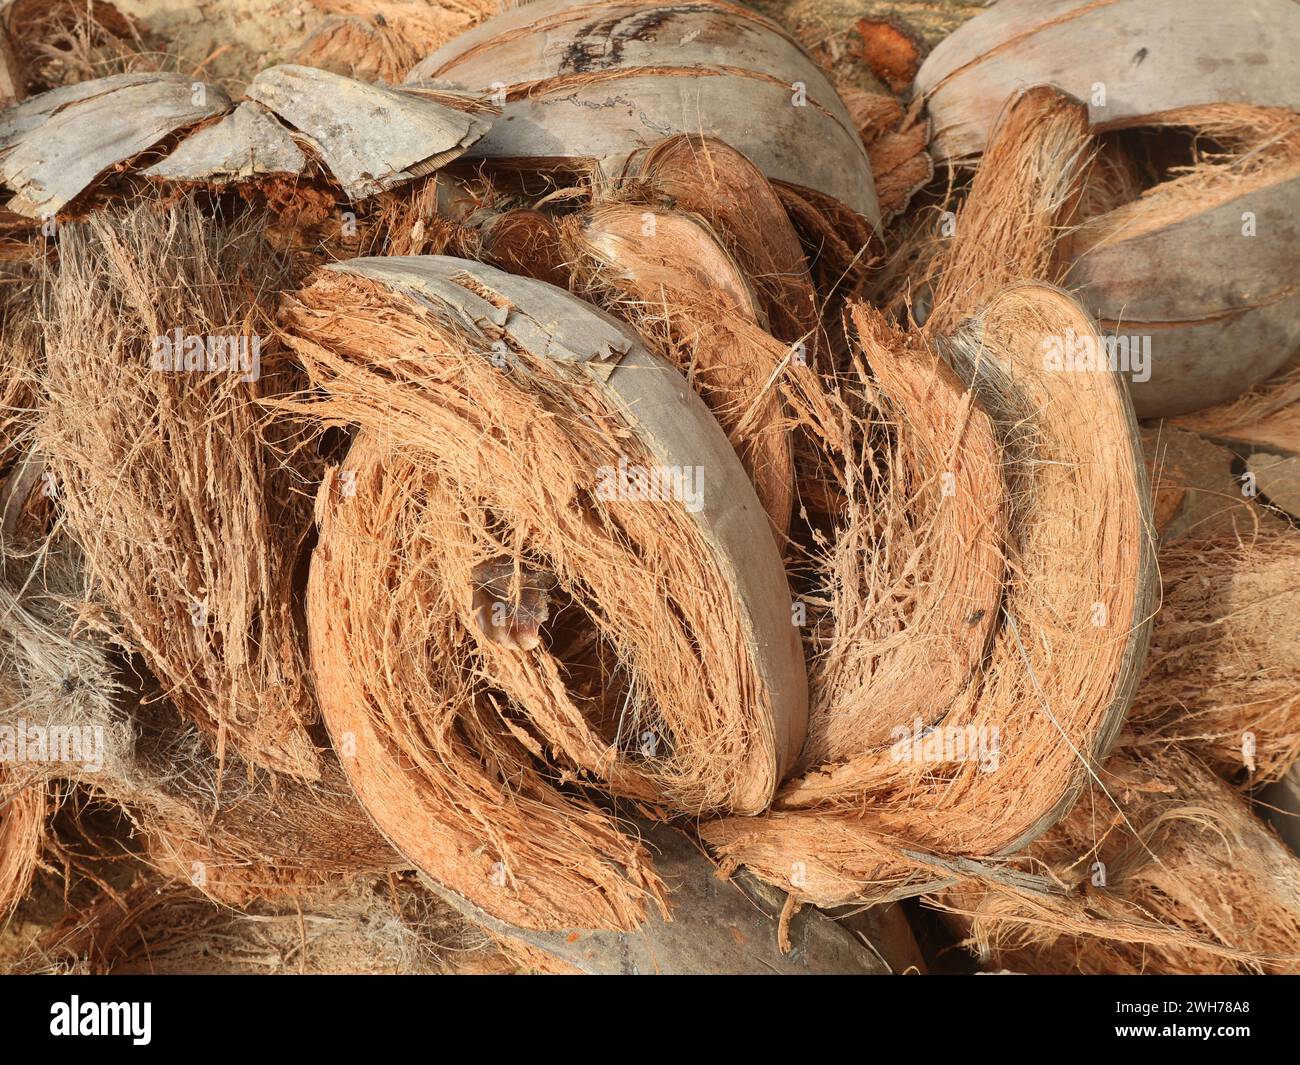 La fibra di cocco di scarto che presenta molti vantaggi contiene fibre ad alto potassio per fertilizzanti organici Foto Stock